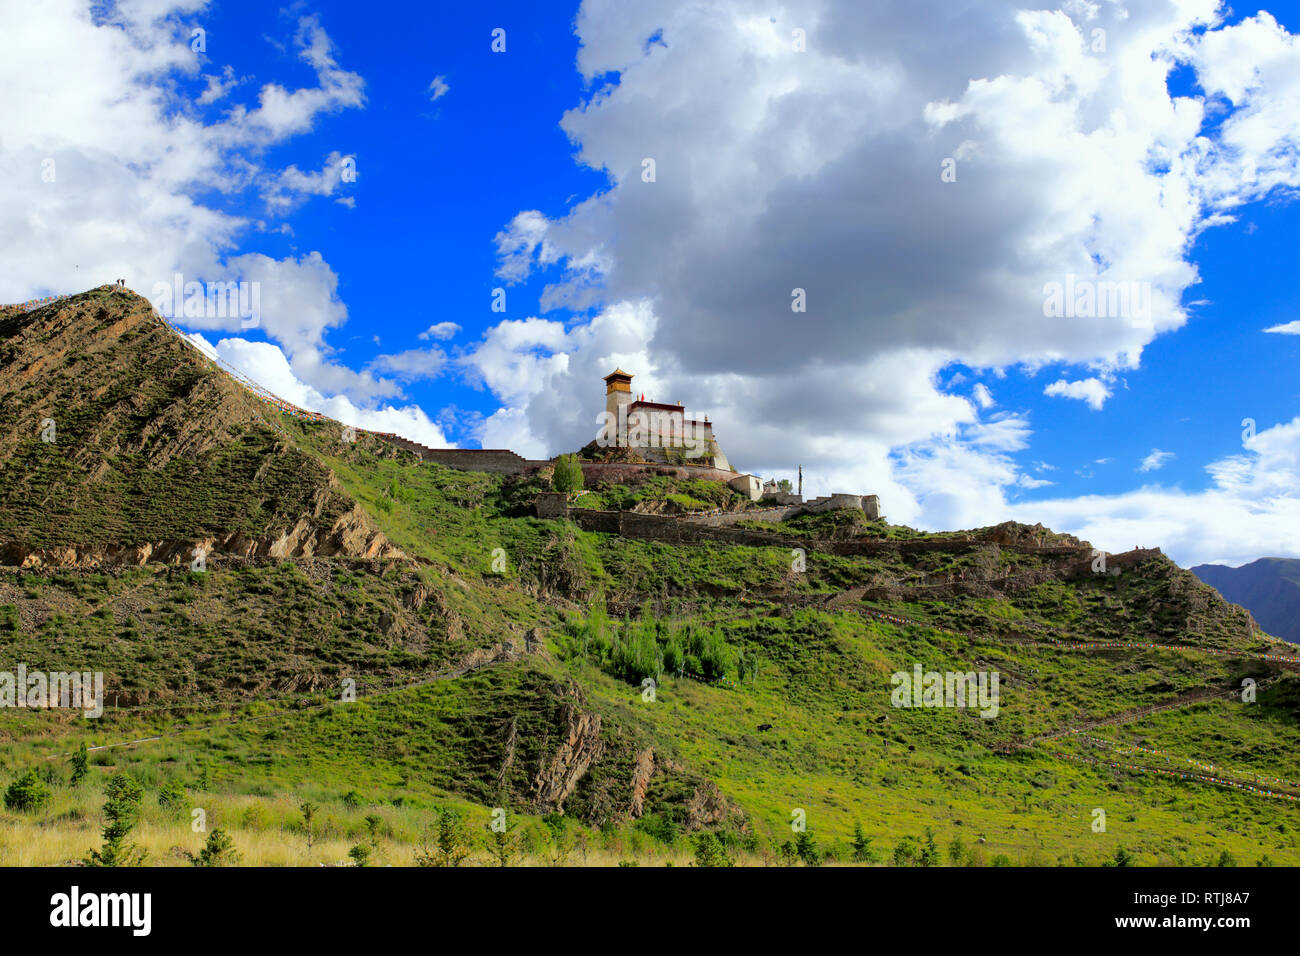 Yumbu Lakhang (Yungbulakang Palace), Lhoka (préfecture de Shannan), Tibet, Chine Banque D'Images